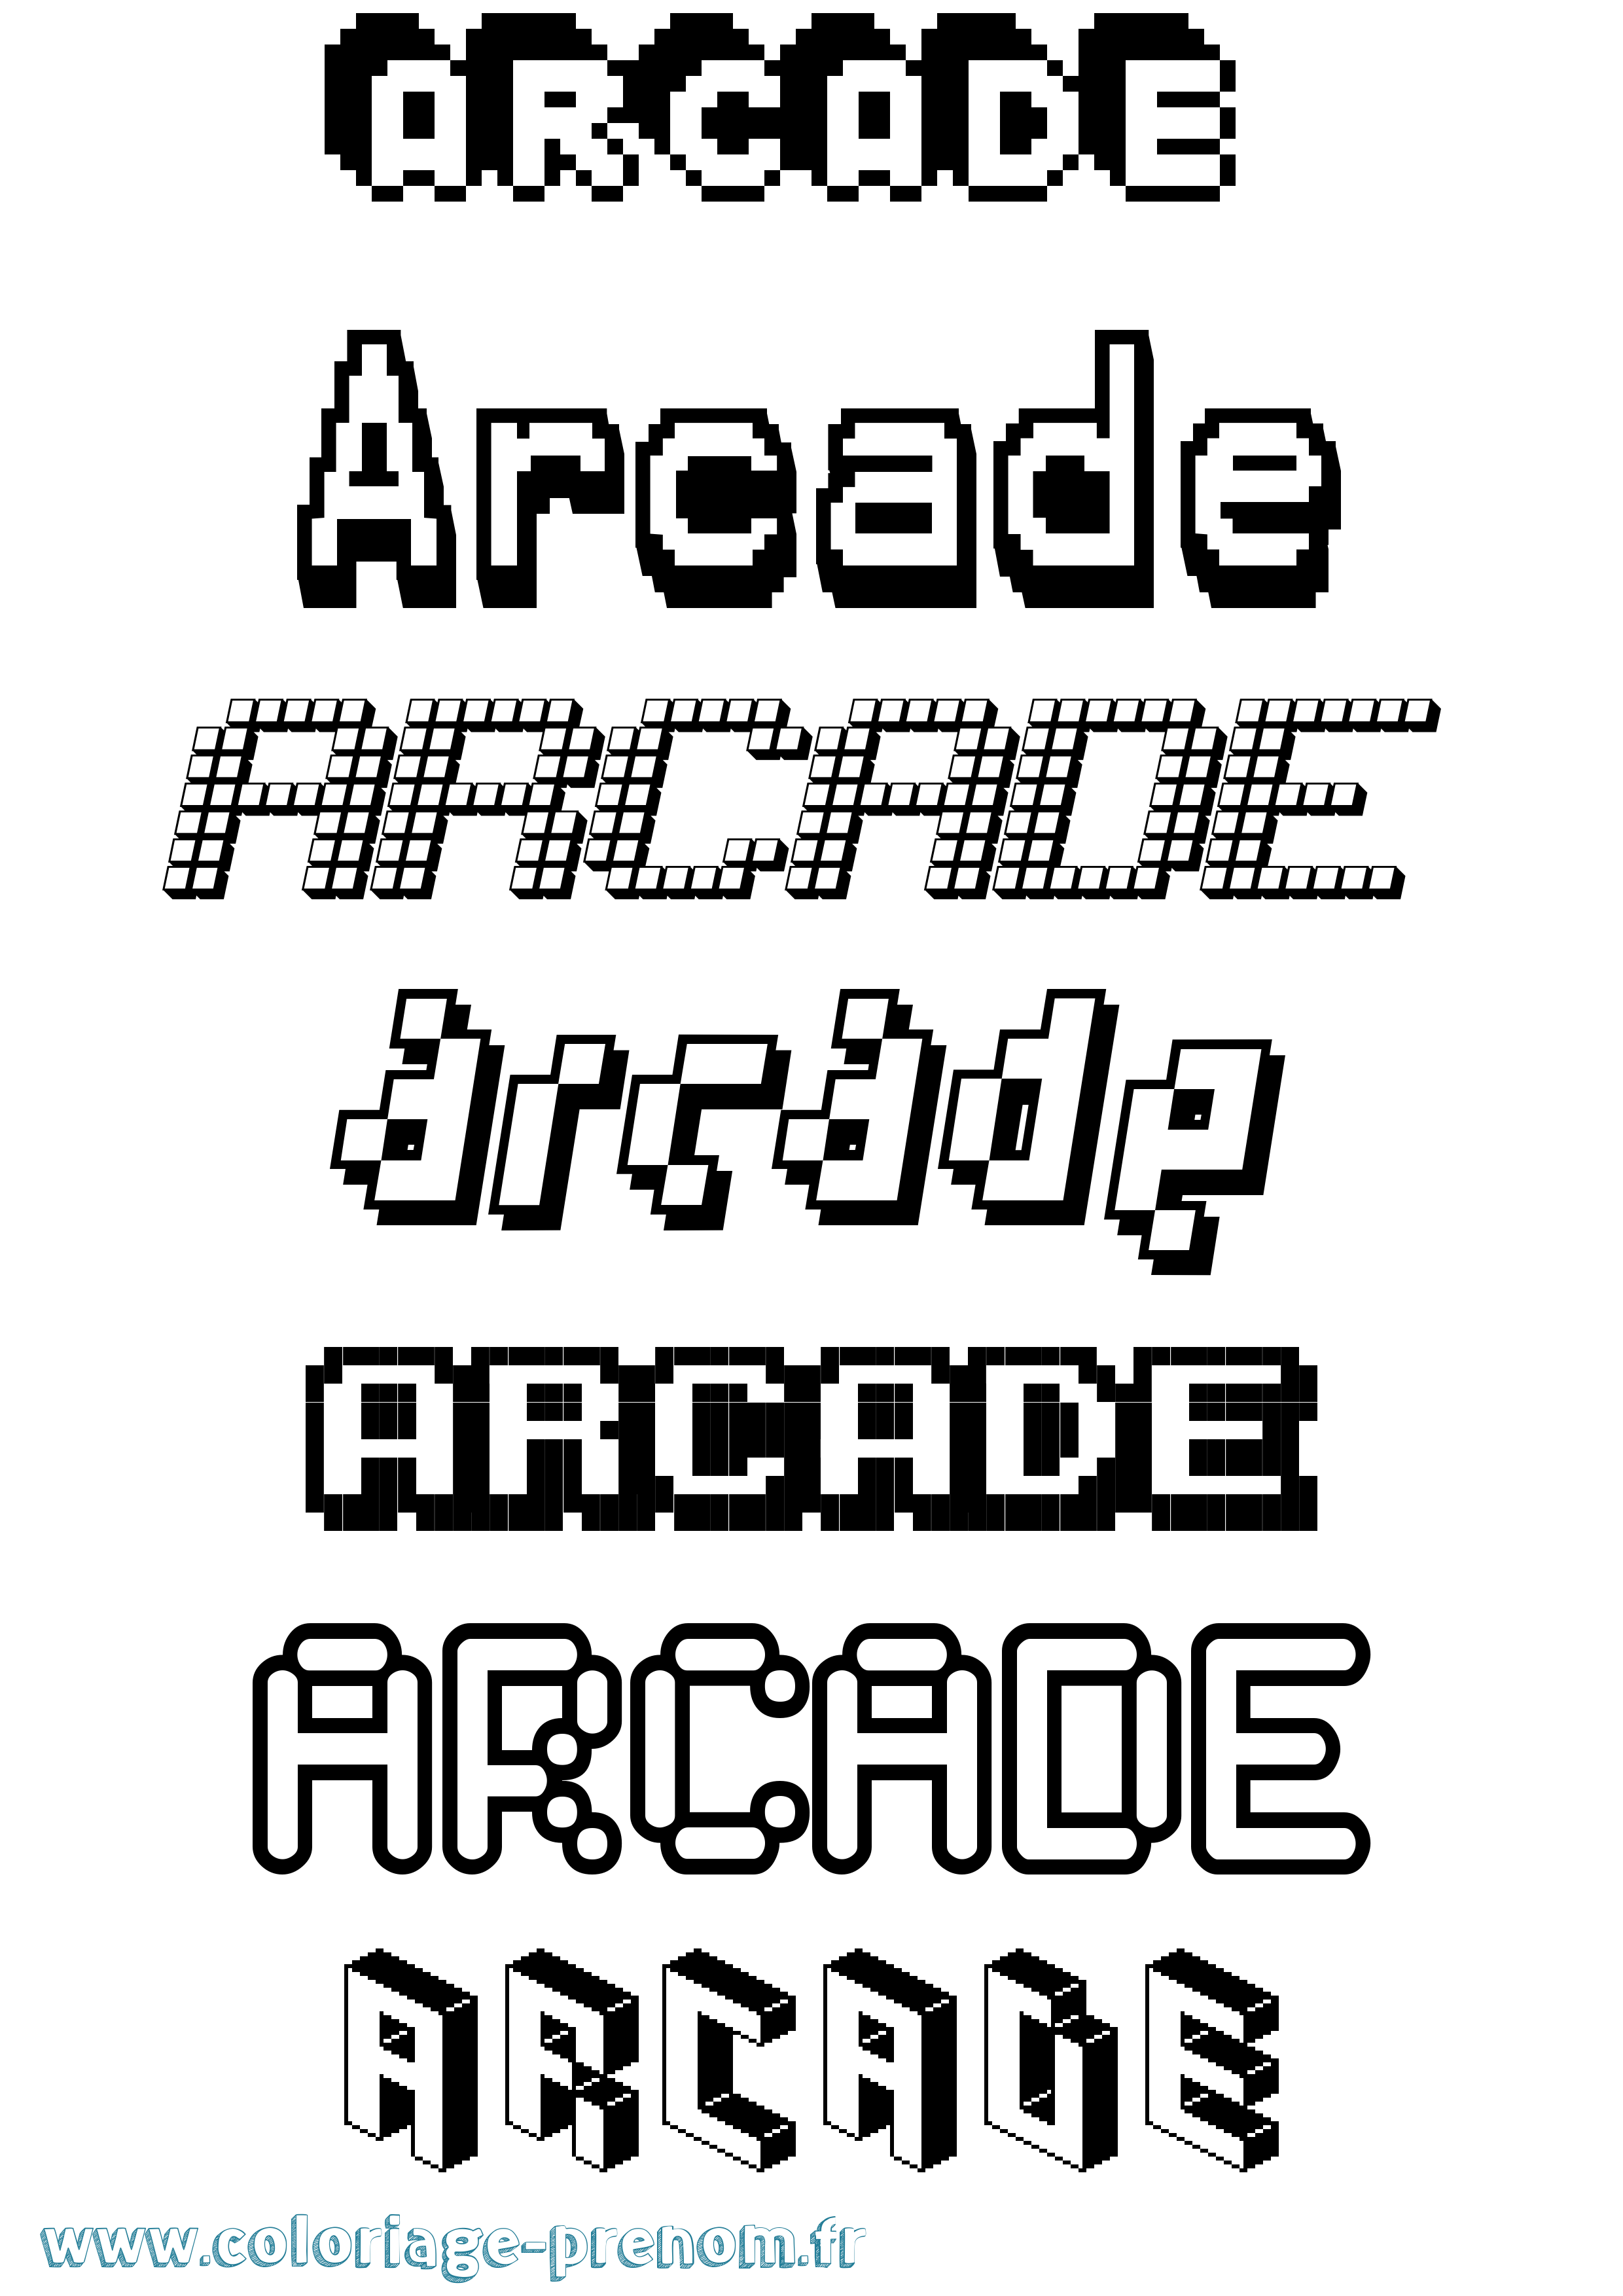 Coloriage prénom Arcade Pixel